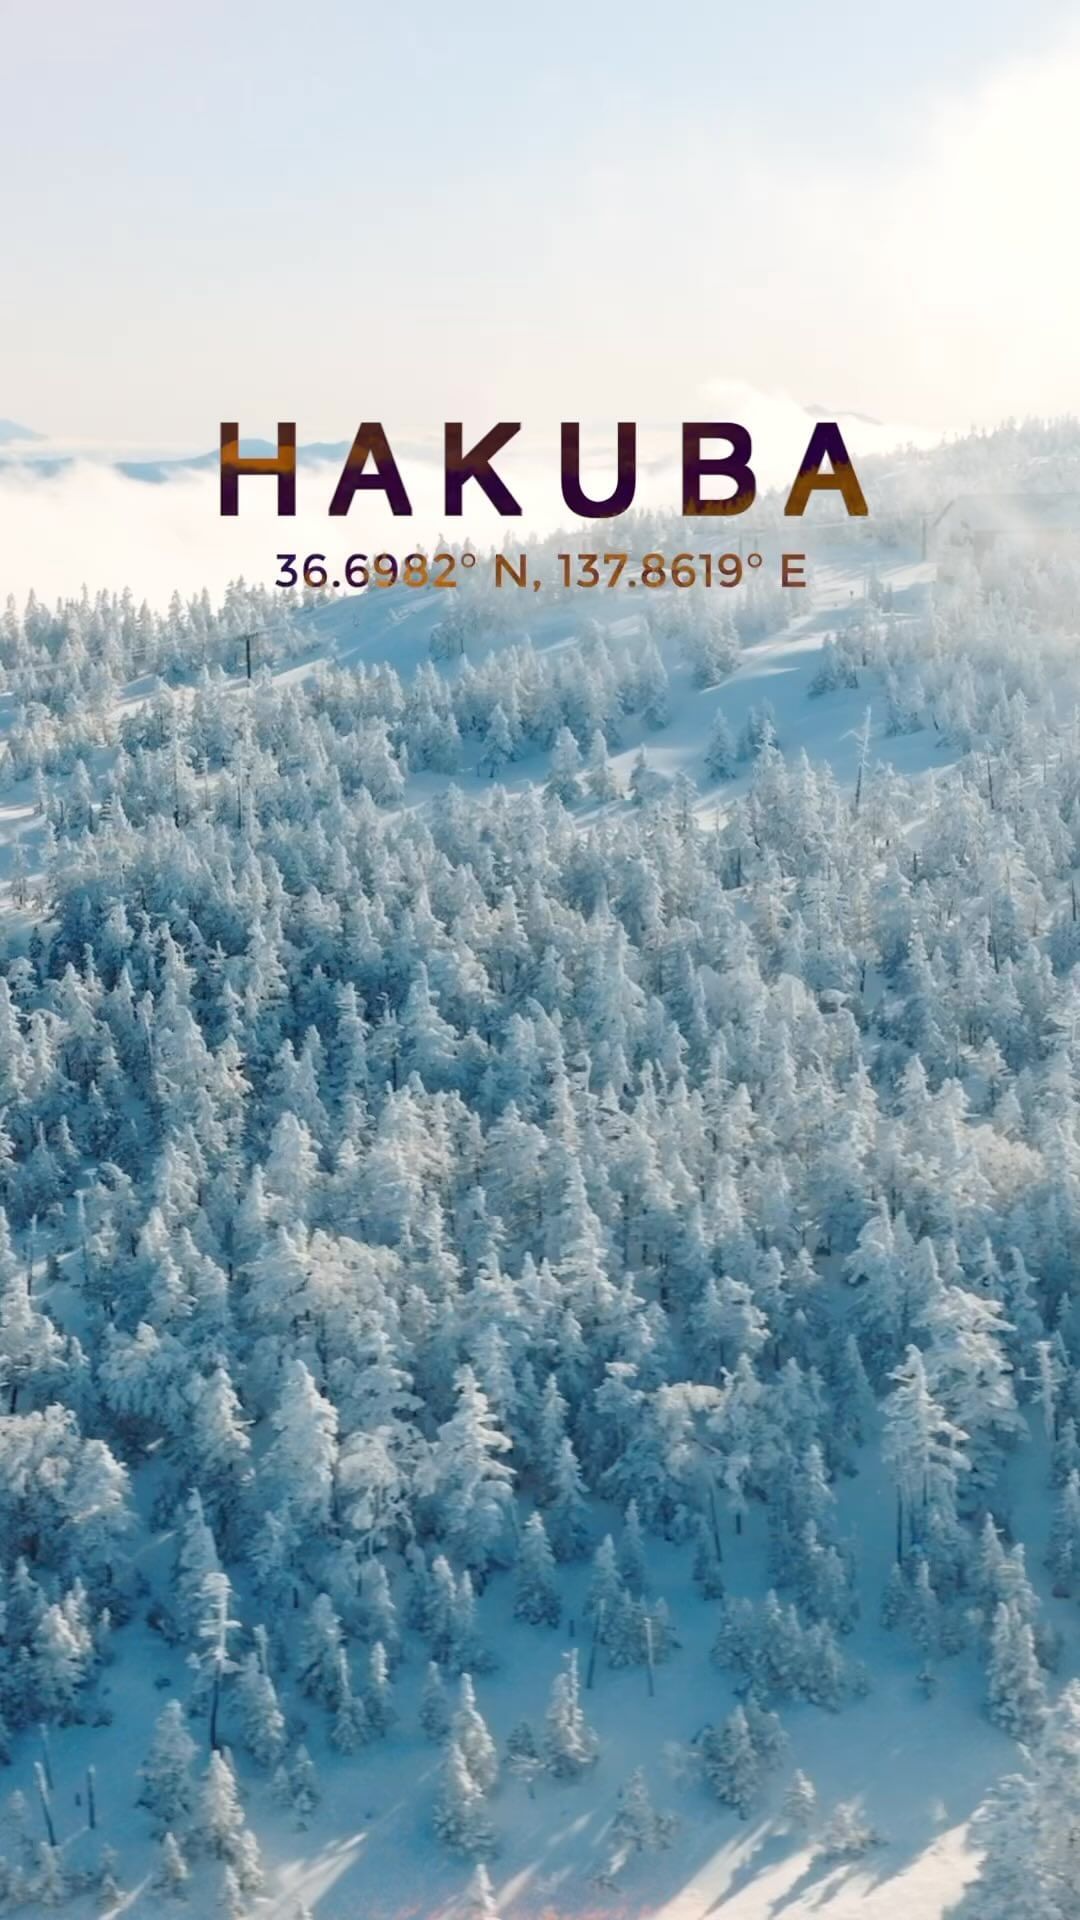 7 Days of Adventure in Hakuba